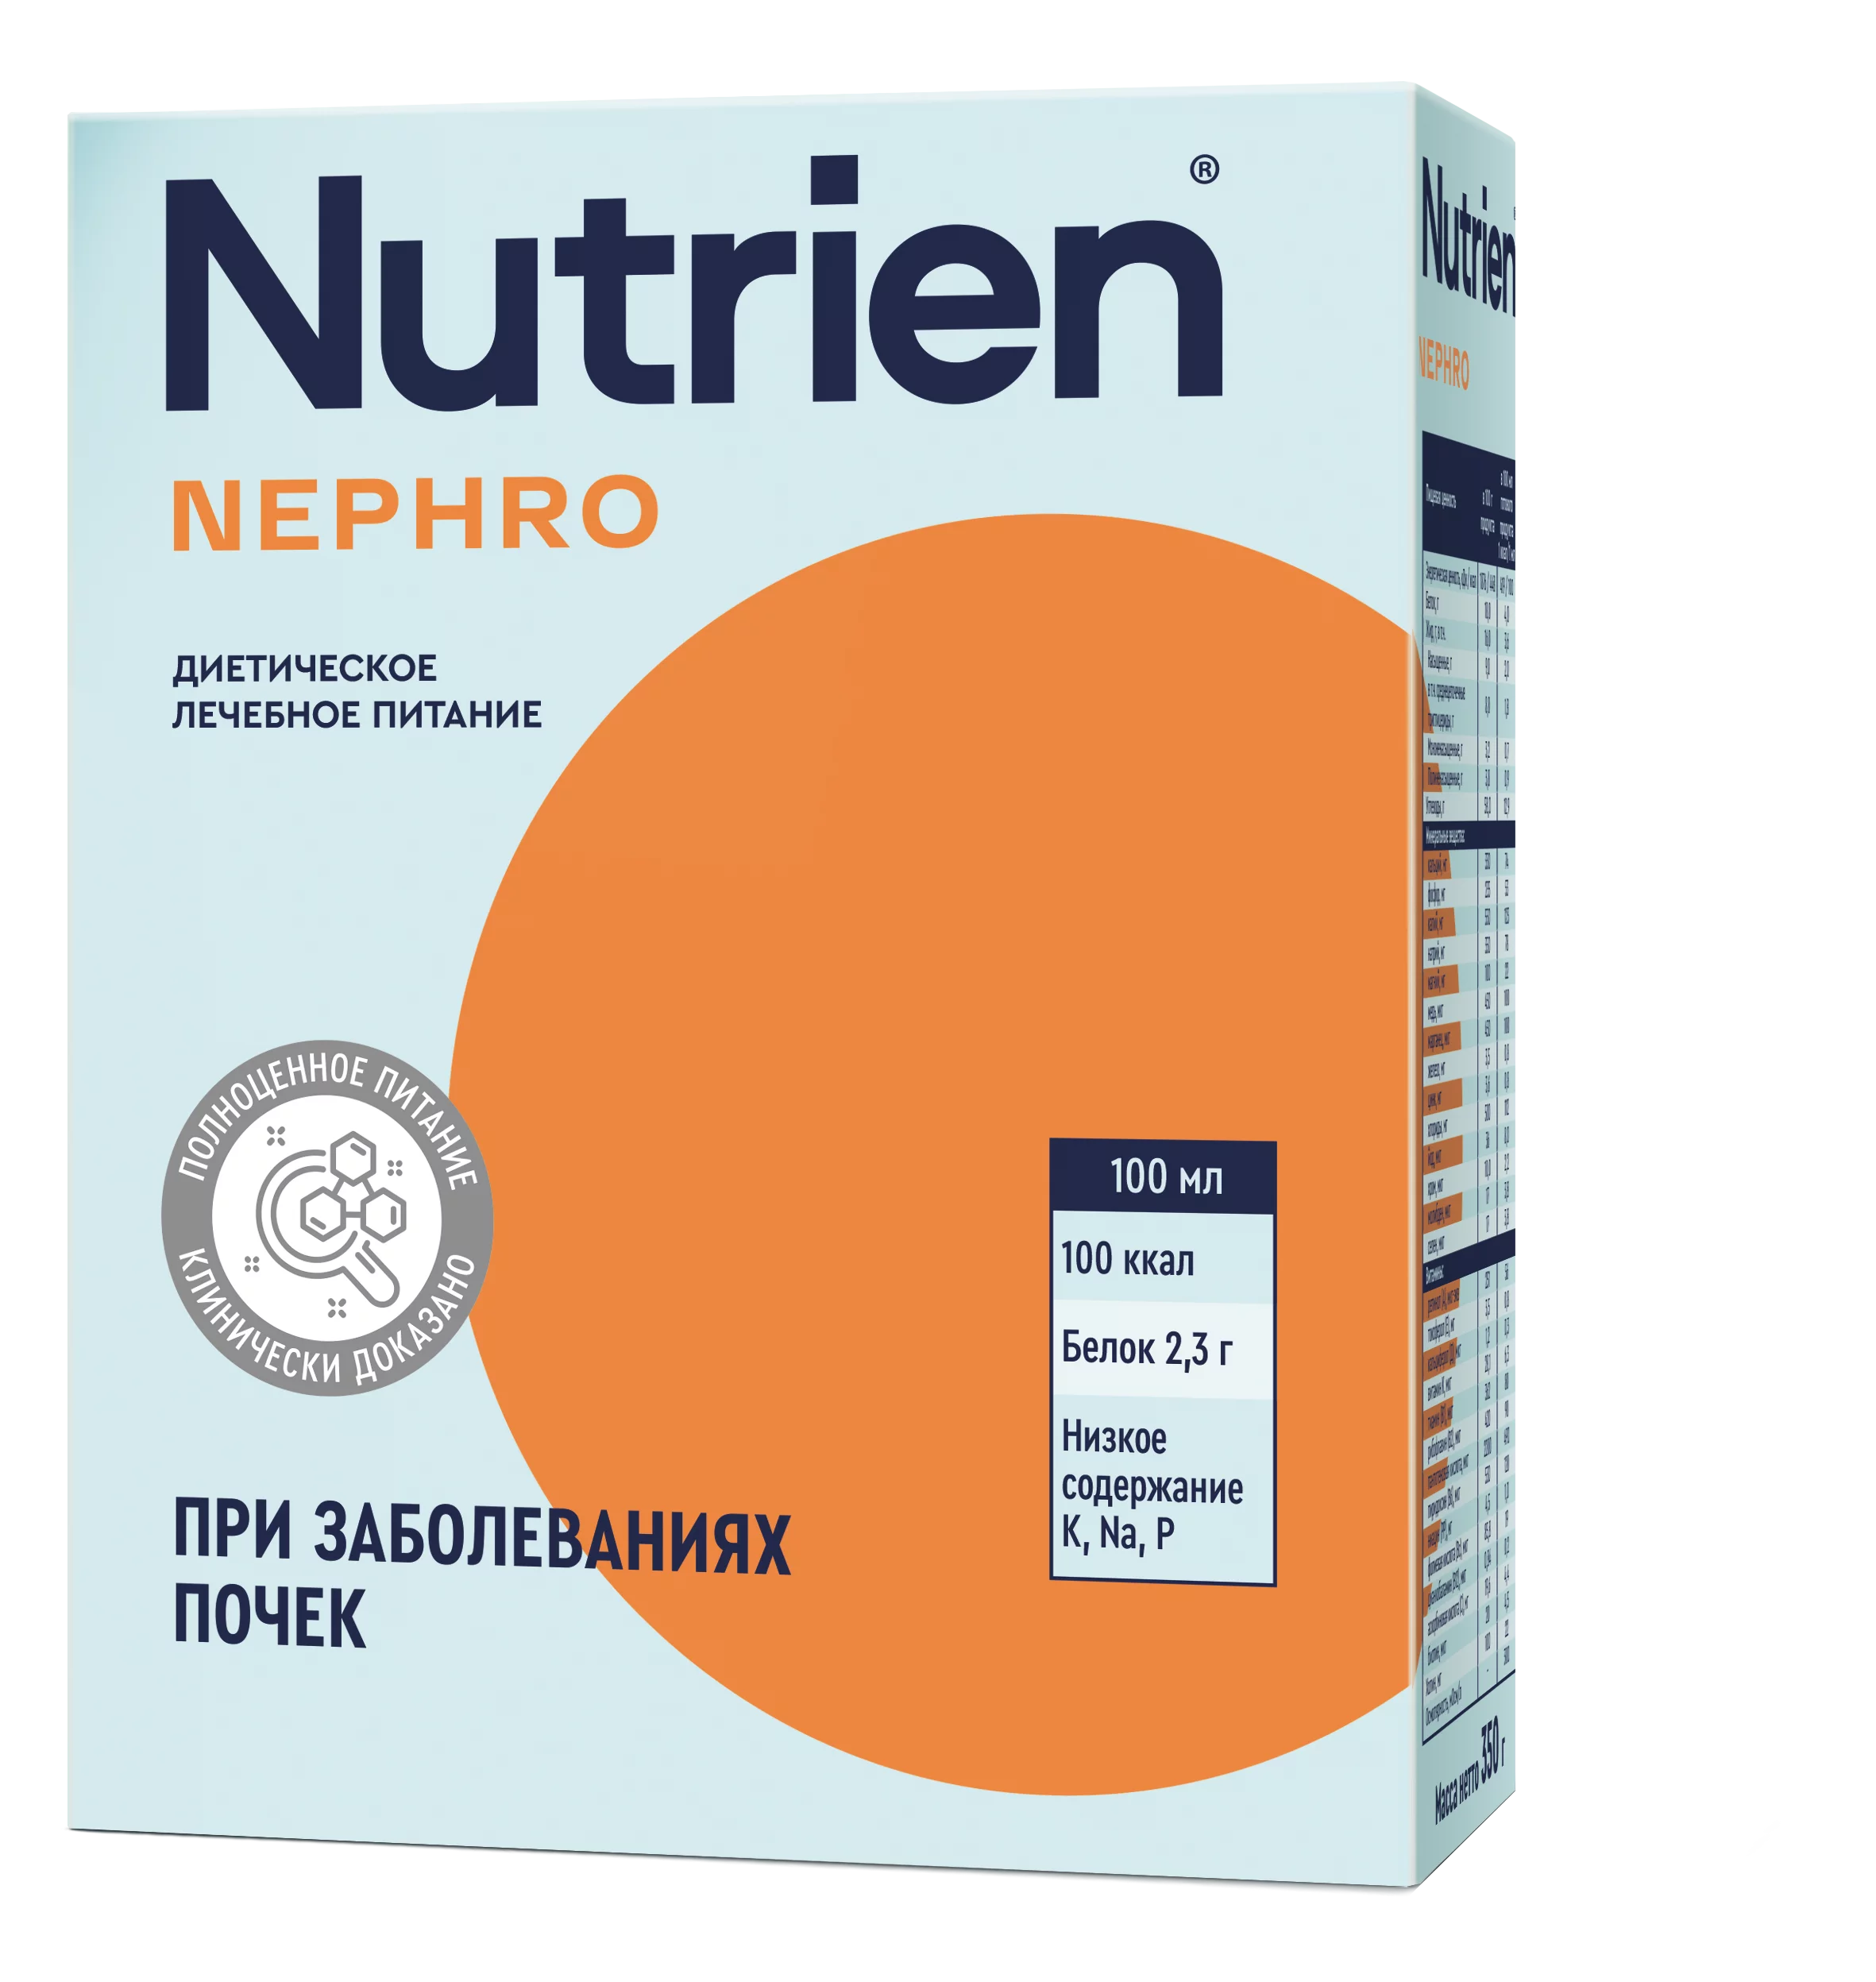 Nutrien Nephro - 1